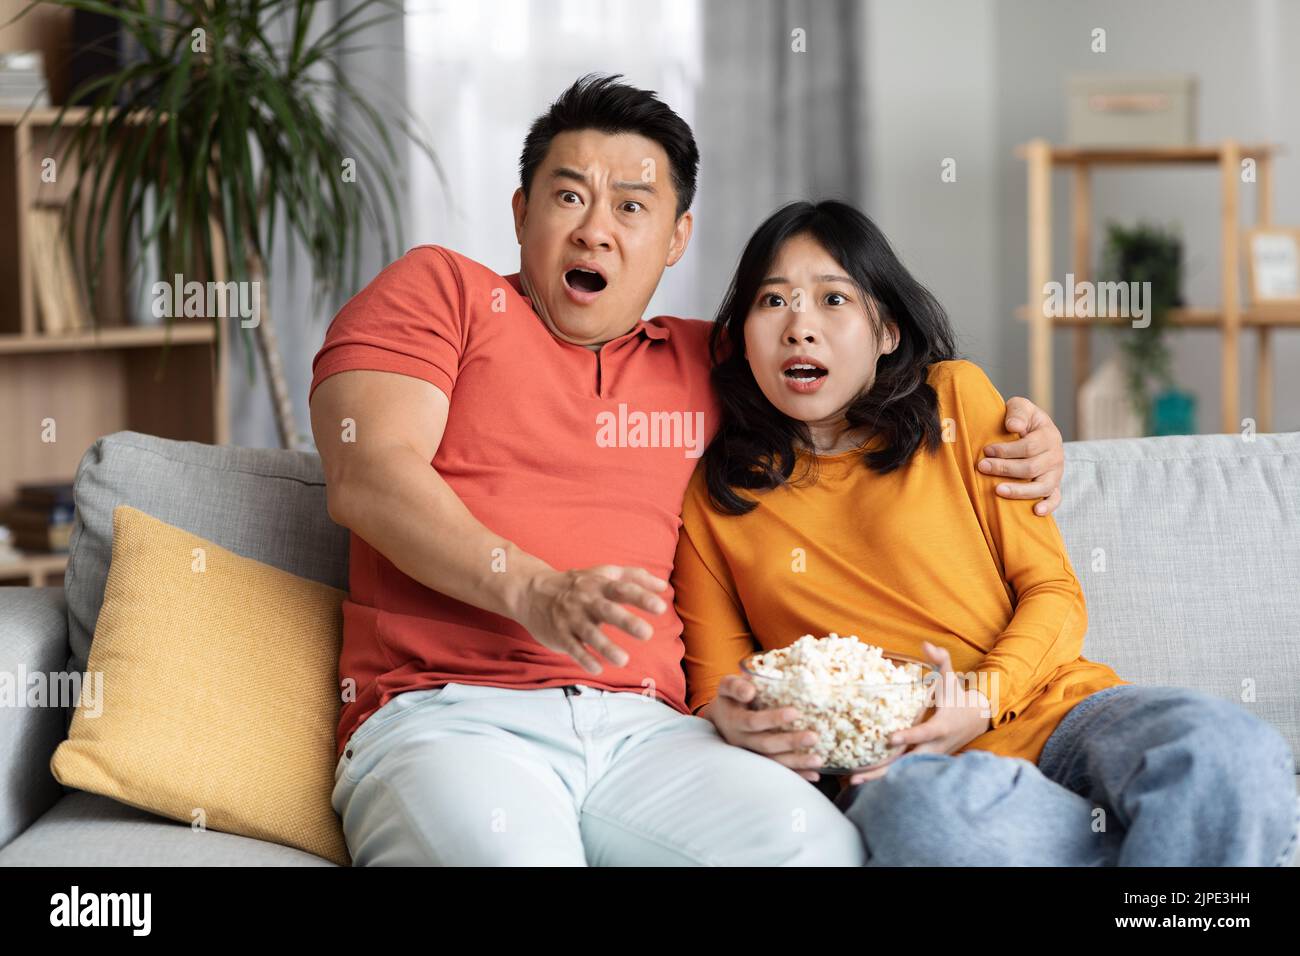 Un homme et une femme coréens enchantés regardant un film effrayant à la maison Banque D'Images